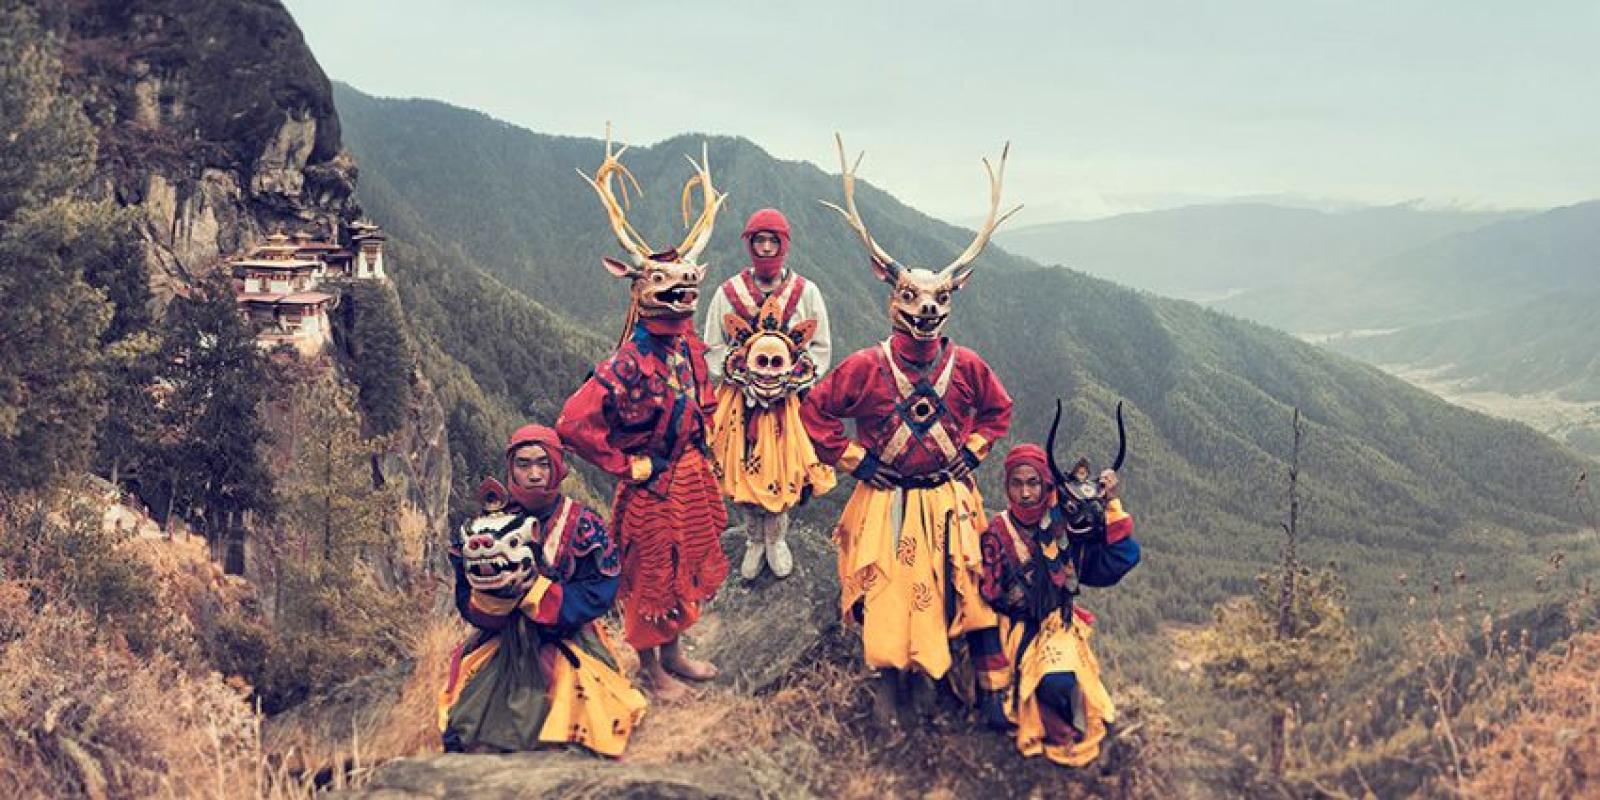 Jimmy Nelson - XXIX 3 // XXIX Bhutan, Photographie 2016, Imprimée d'après